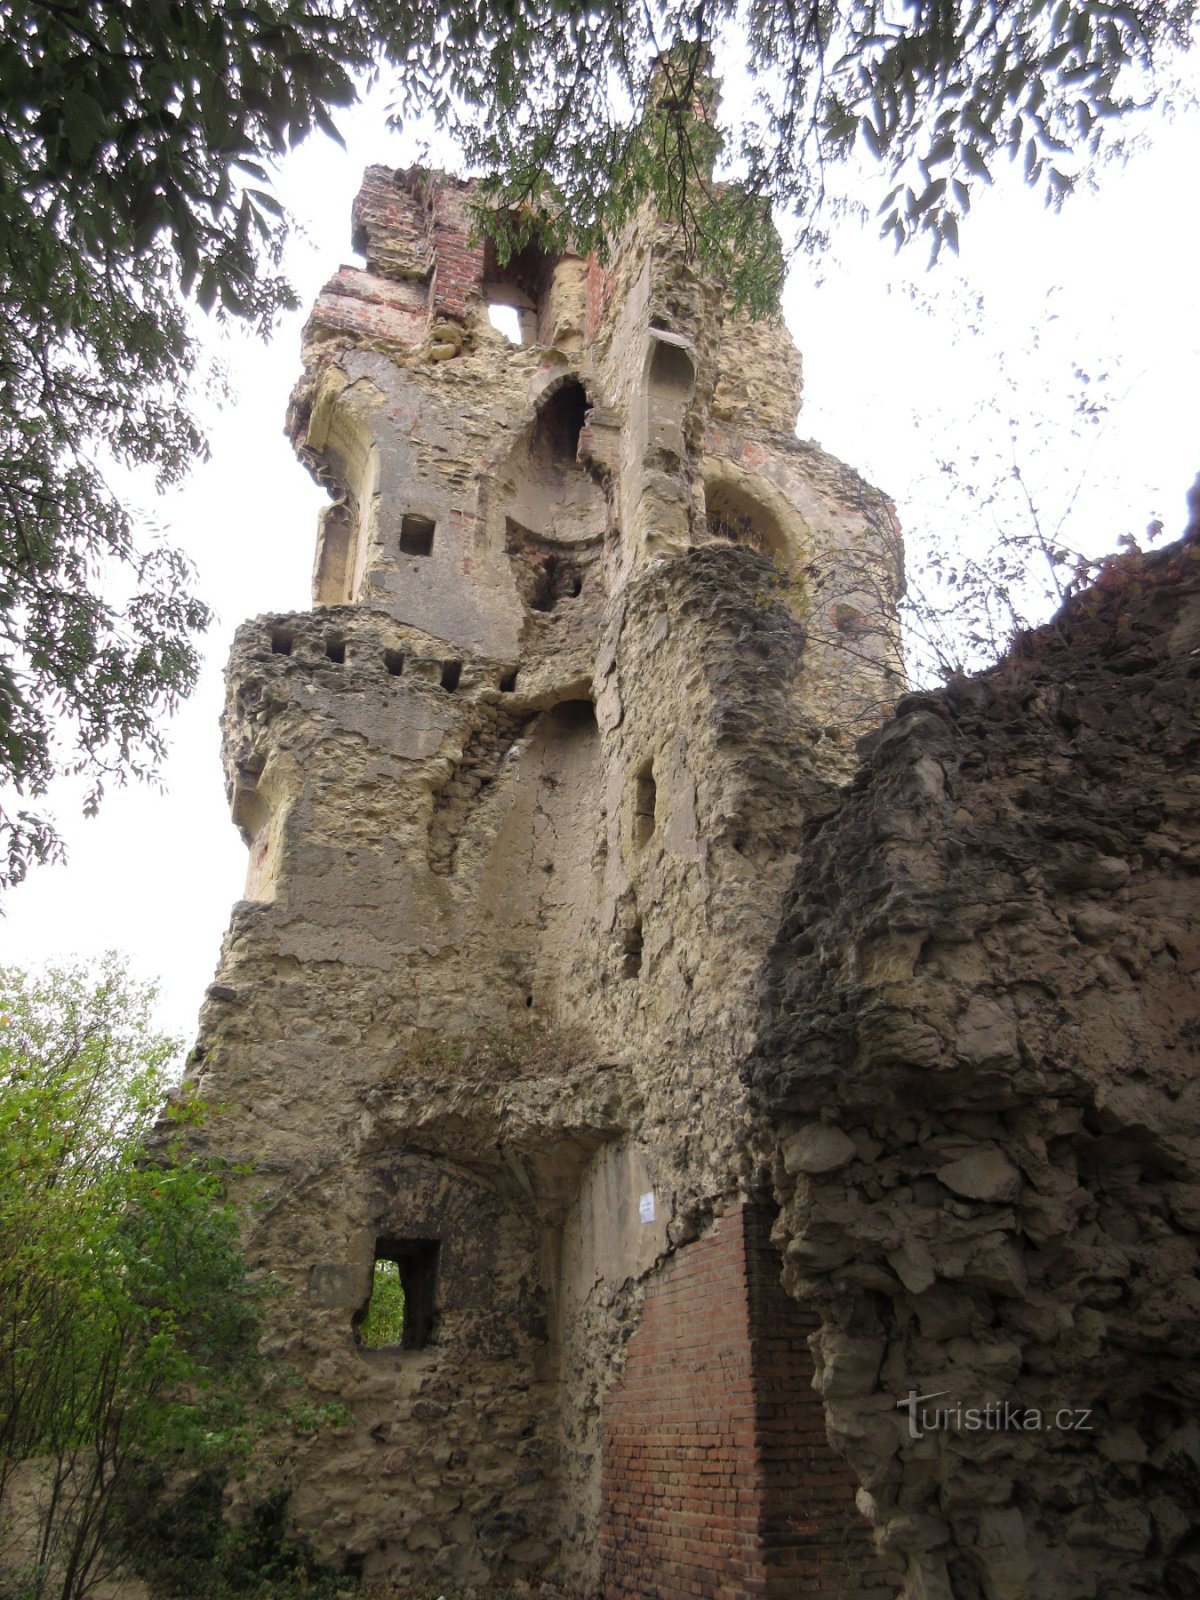 Dražice - en kort historie om Dražices herrer og ruinerne af slottet